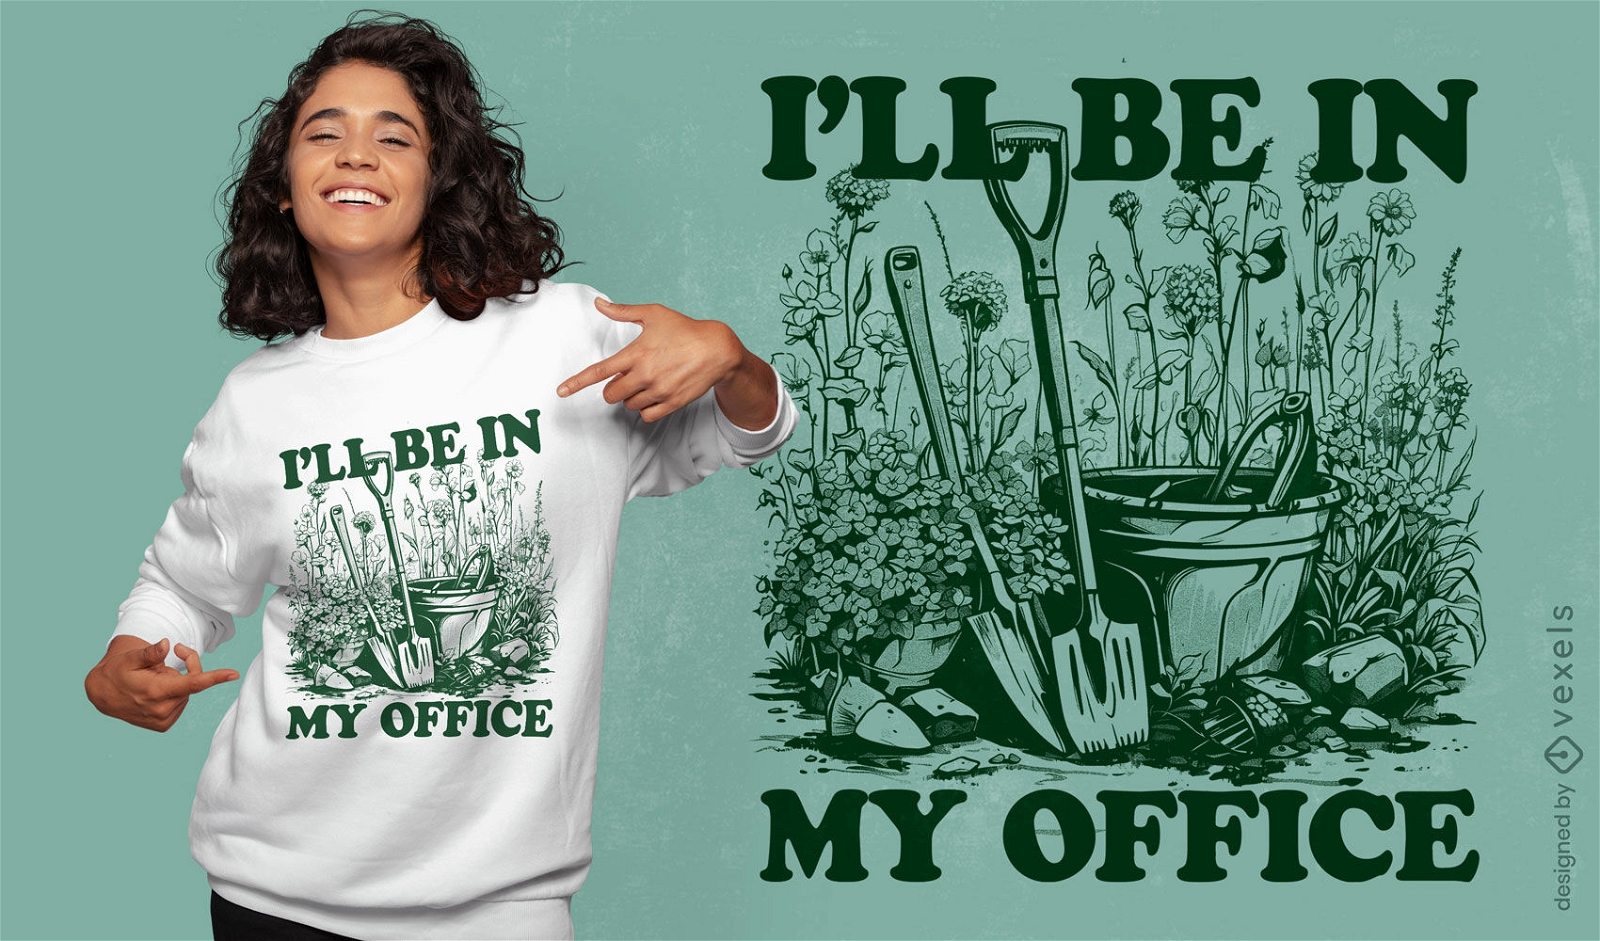 Dise?o de camiseta con cita de oficina de jardiner?a.